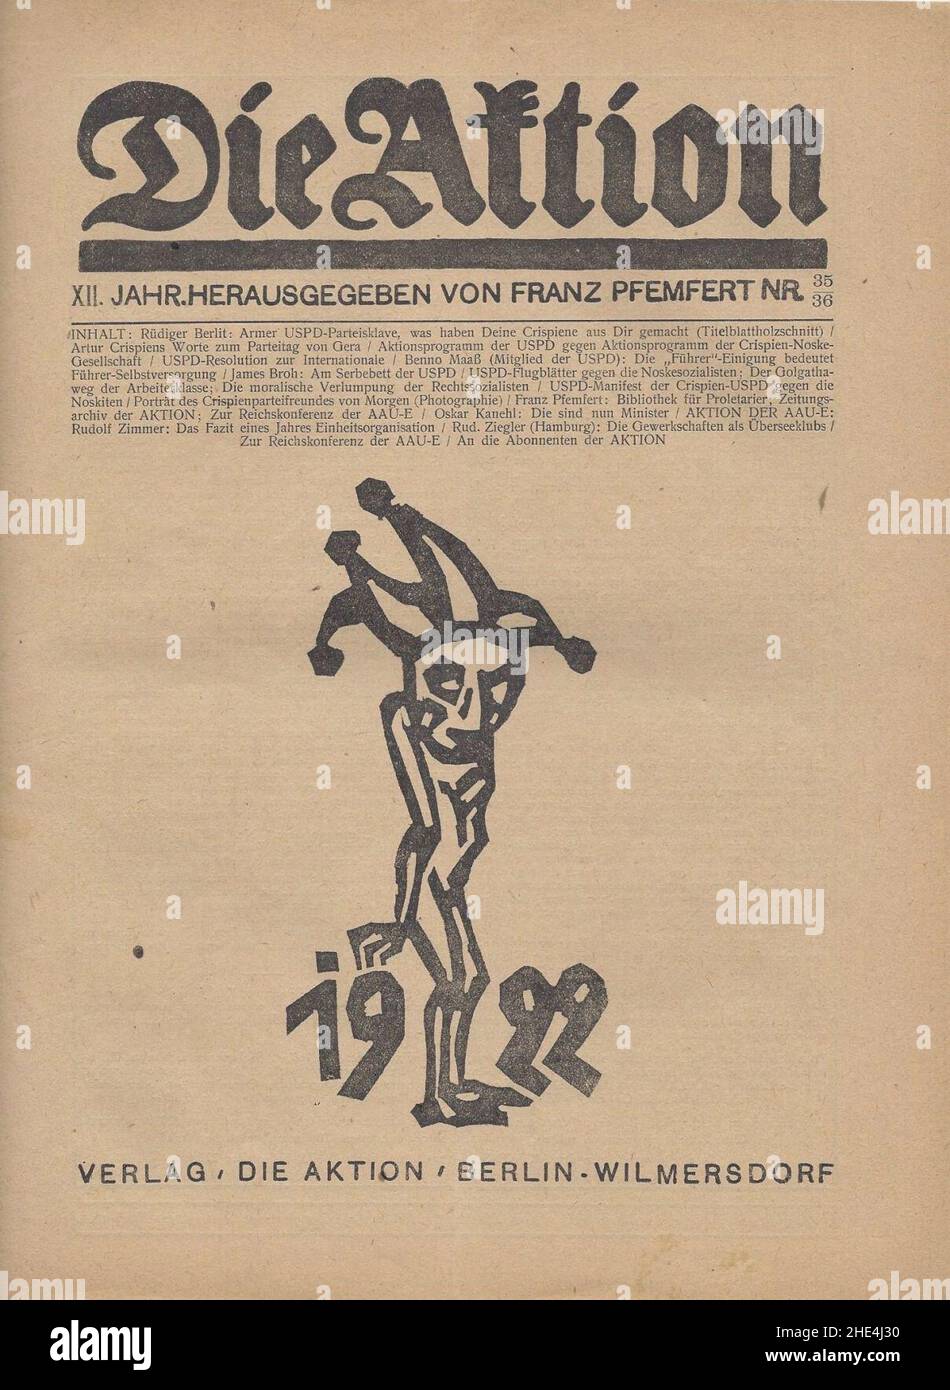 Rüdiger Berlit - Armer USPD-Parteisklave - Die Aktion, 1922. Stock Photo